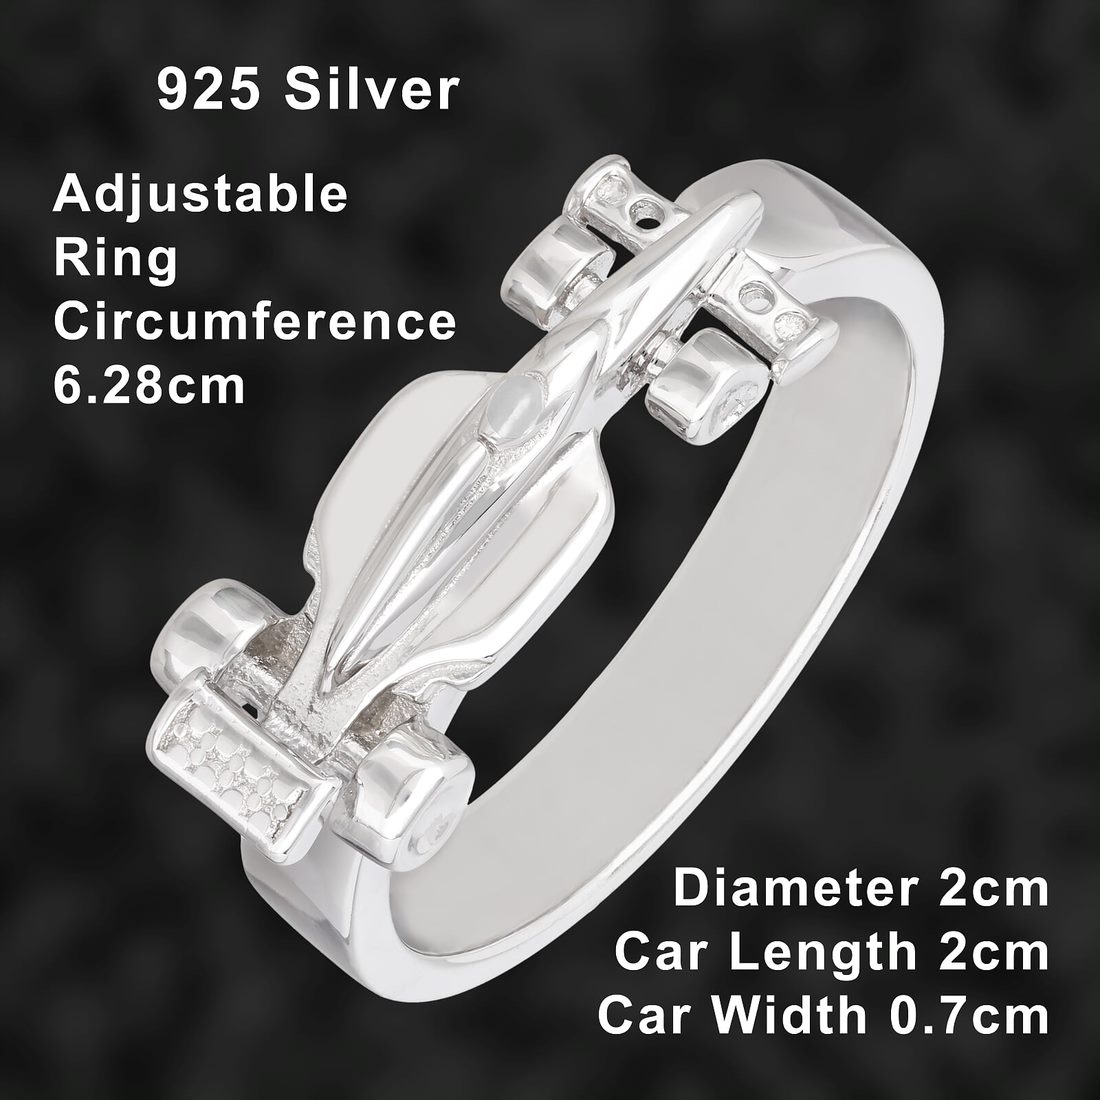 Ladies Adjustable Car Ring Silver - MJ MONACO